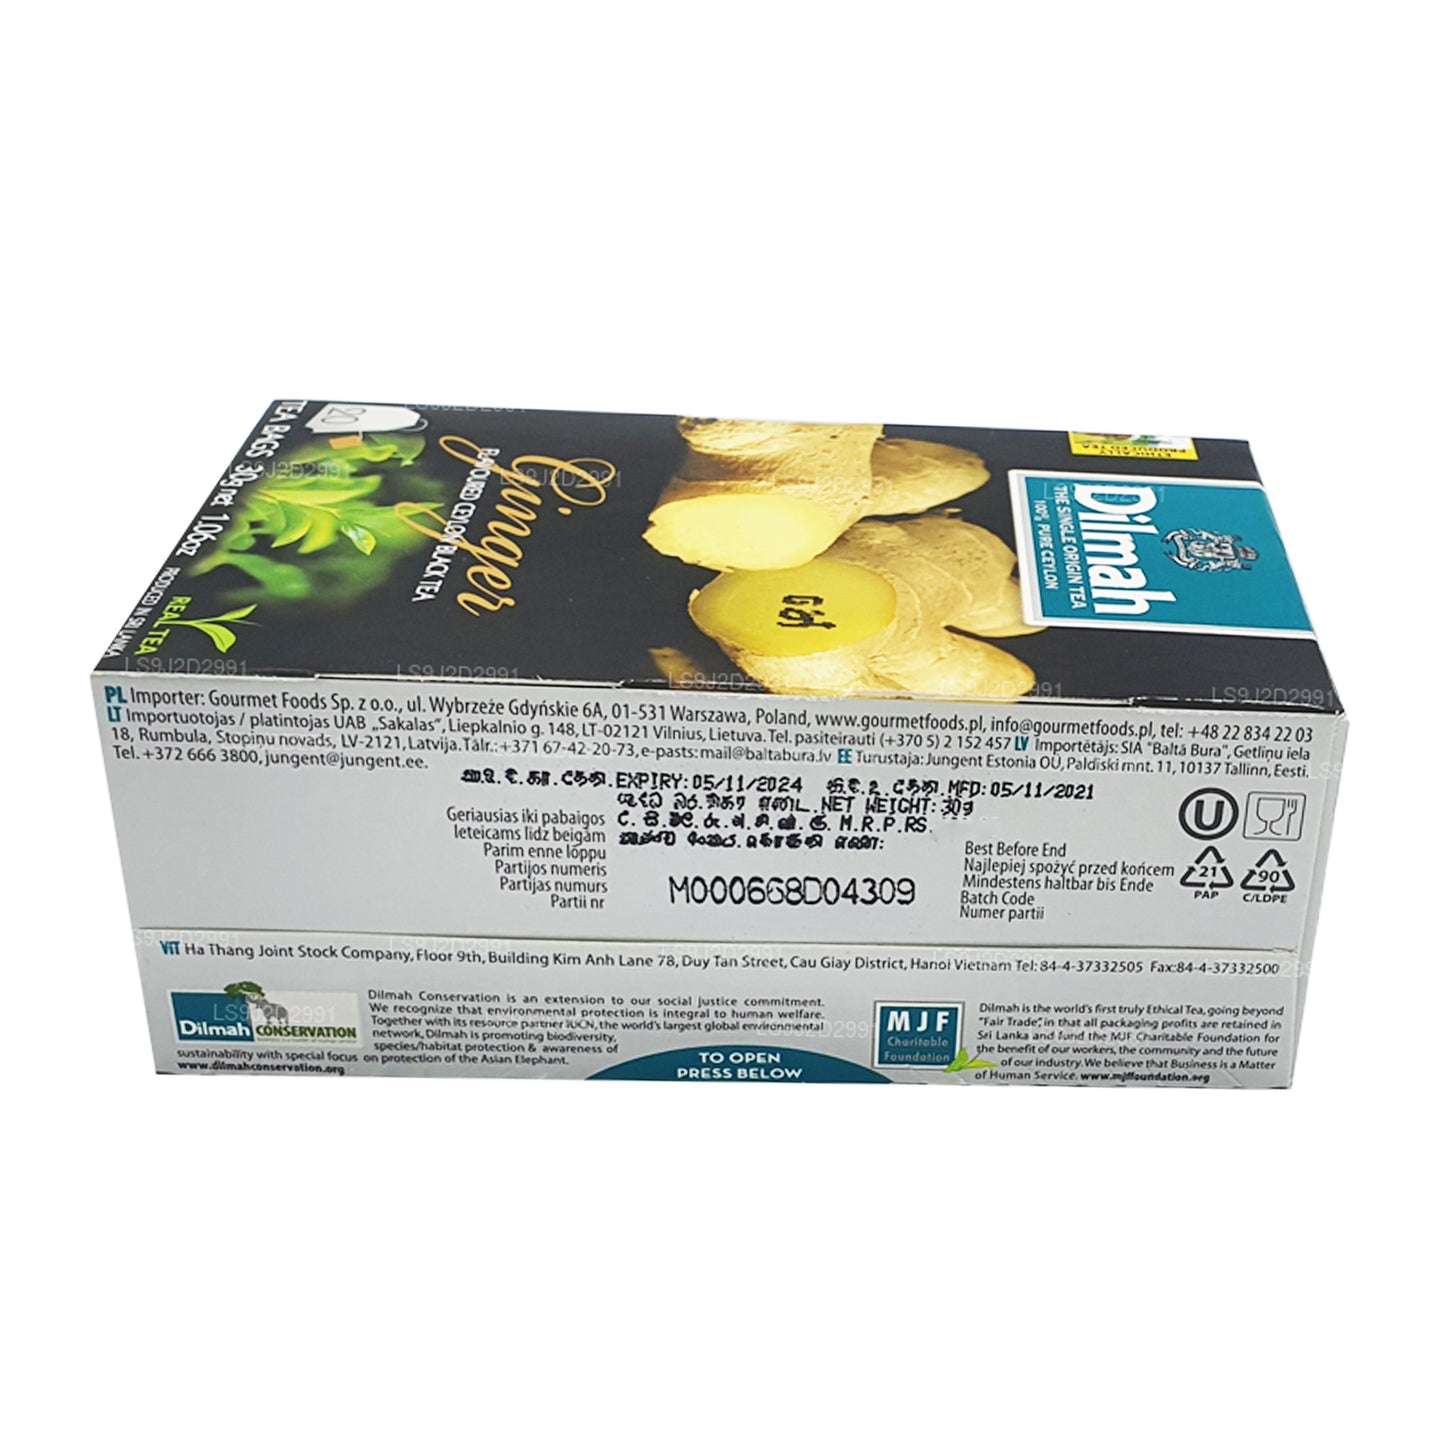 Dilmah ingefær aromatiseret sort te (30 g) 20 teposer